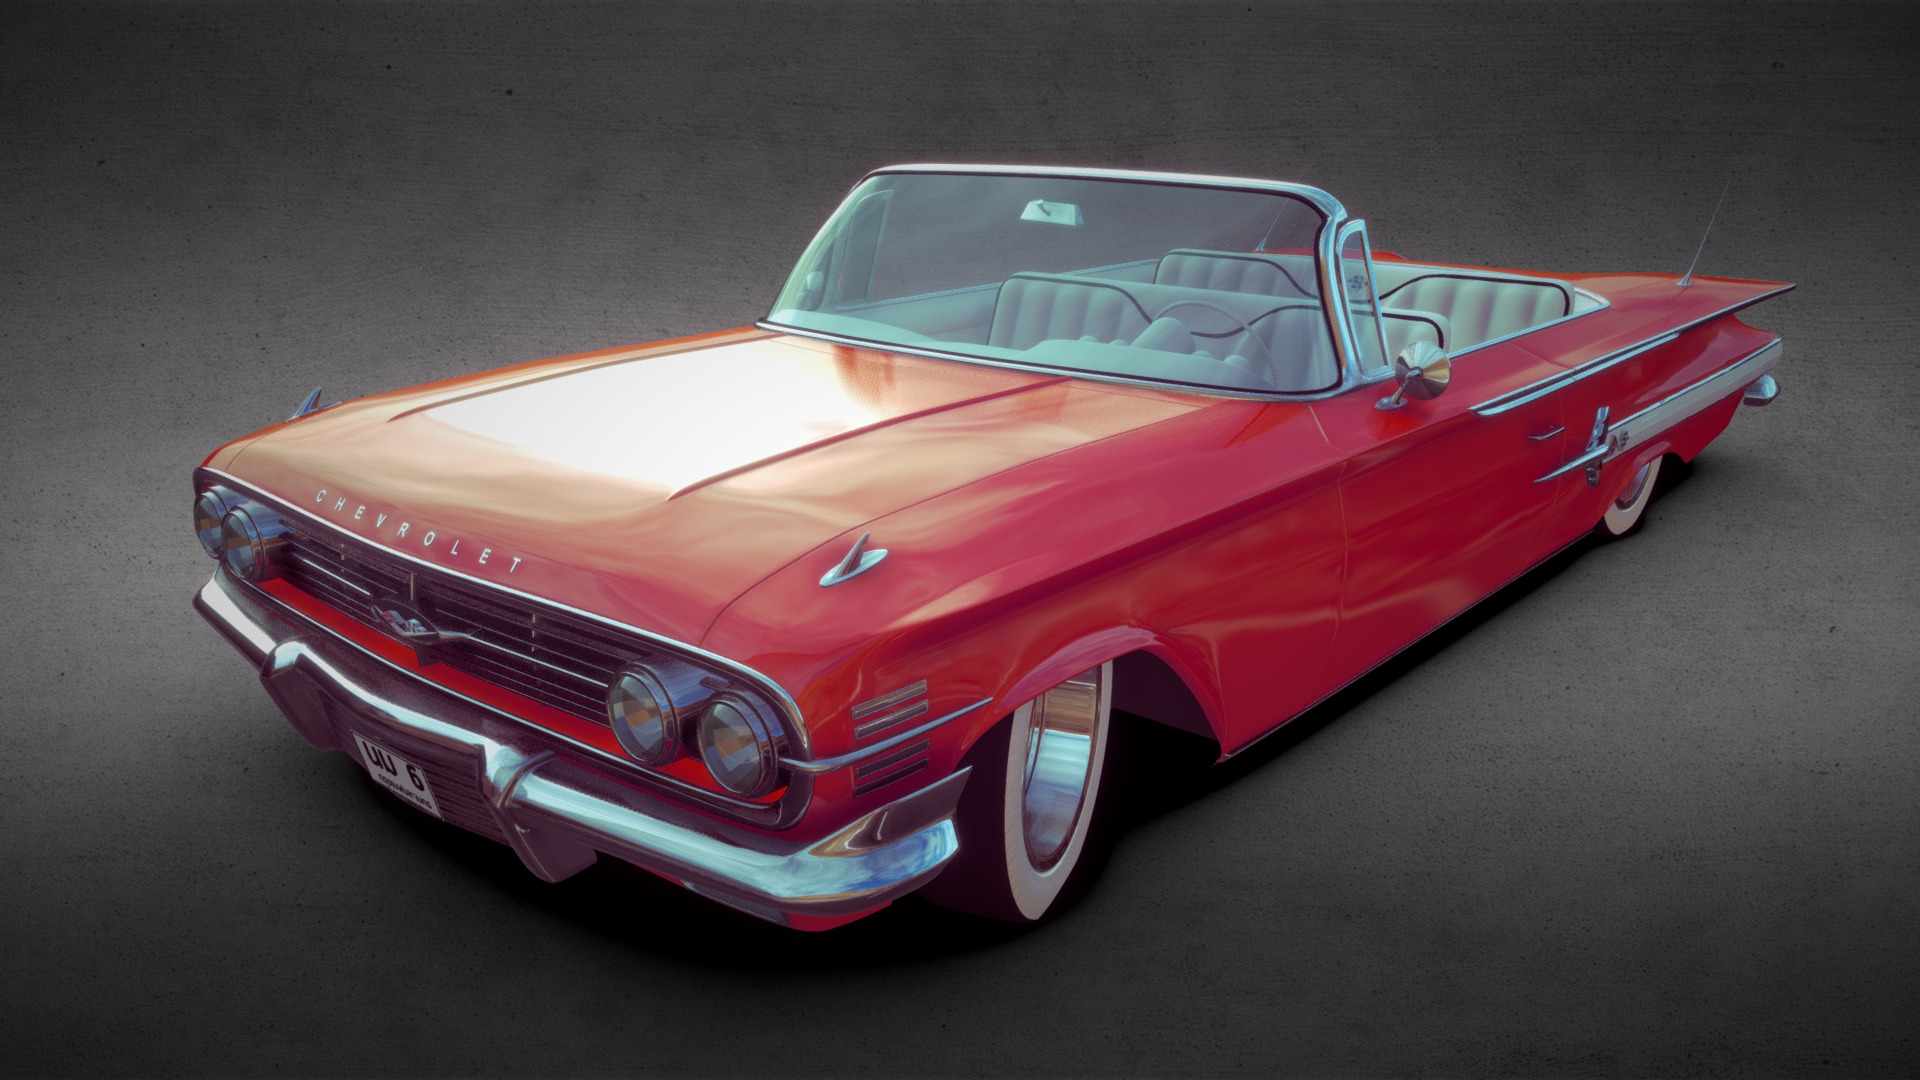 3D model Chevrolet Impala 1960 - This is a 3D model of the Chevrolet Impala 1960. The 3D model is about a red convertible car.